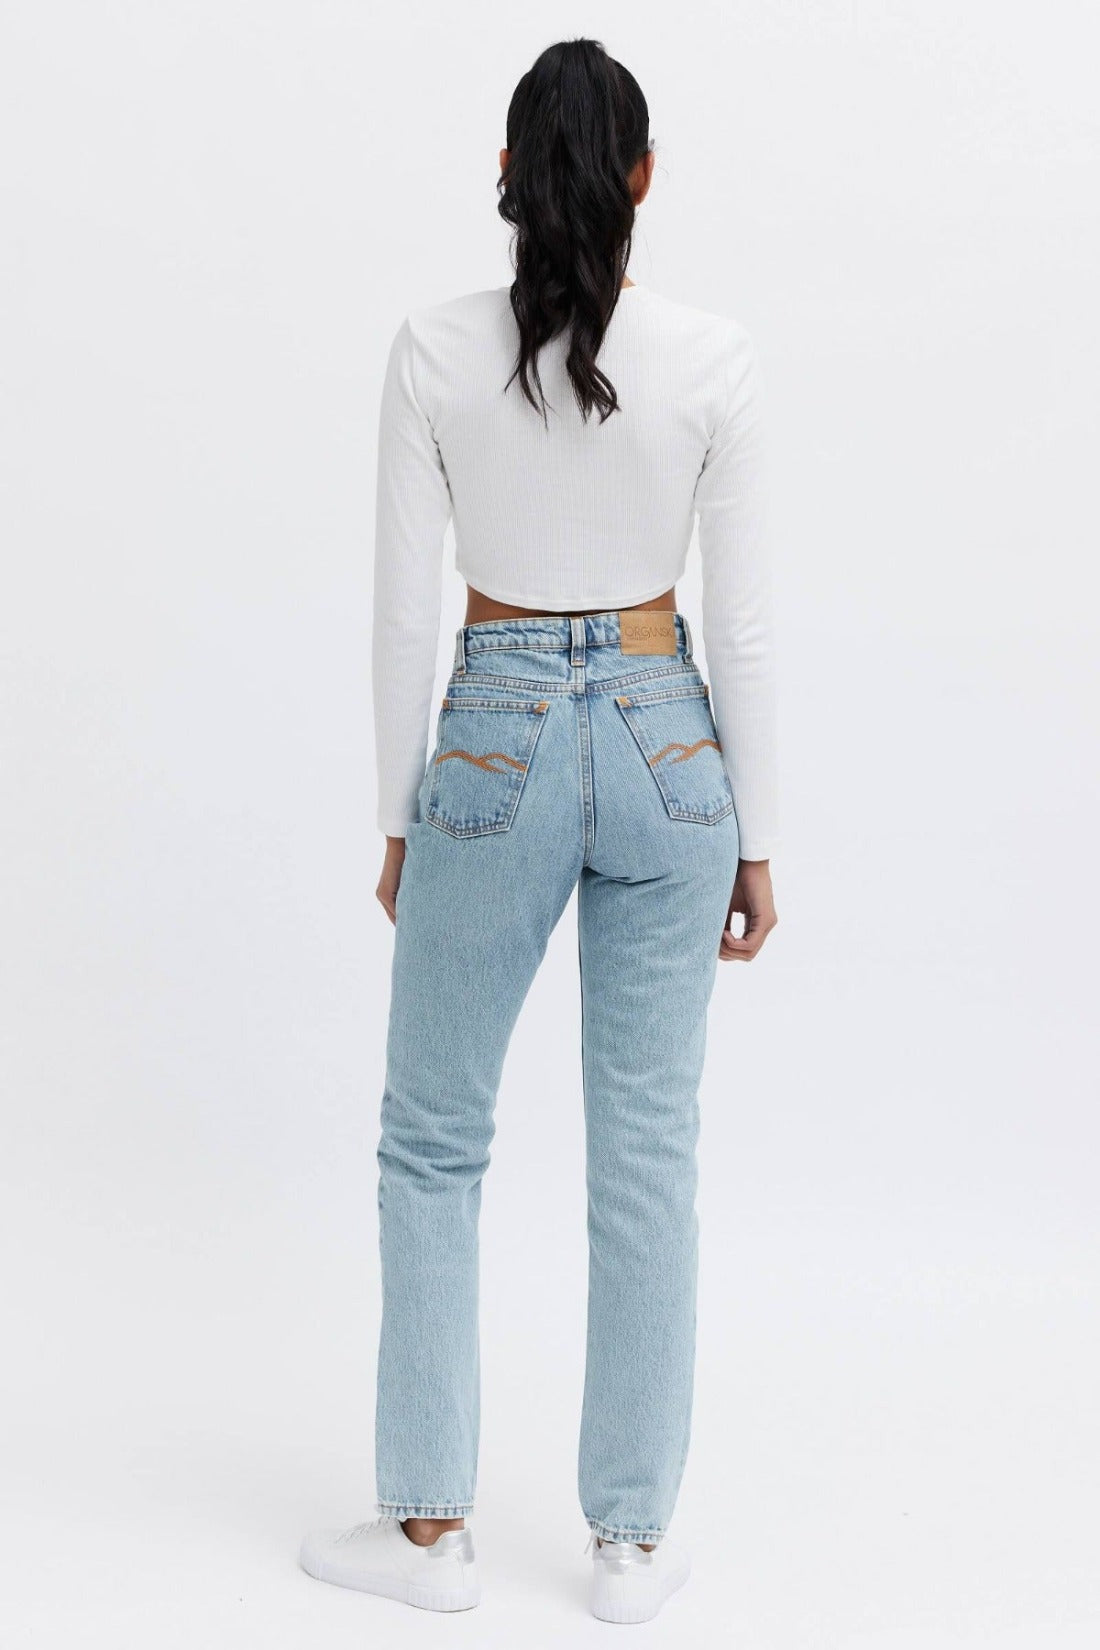 ethical denim jeans for women. 